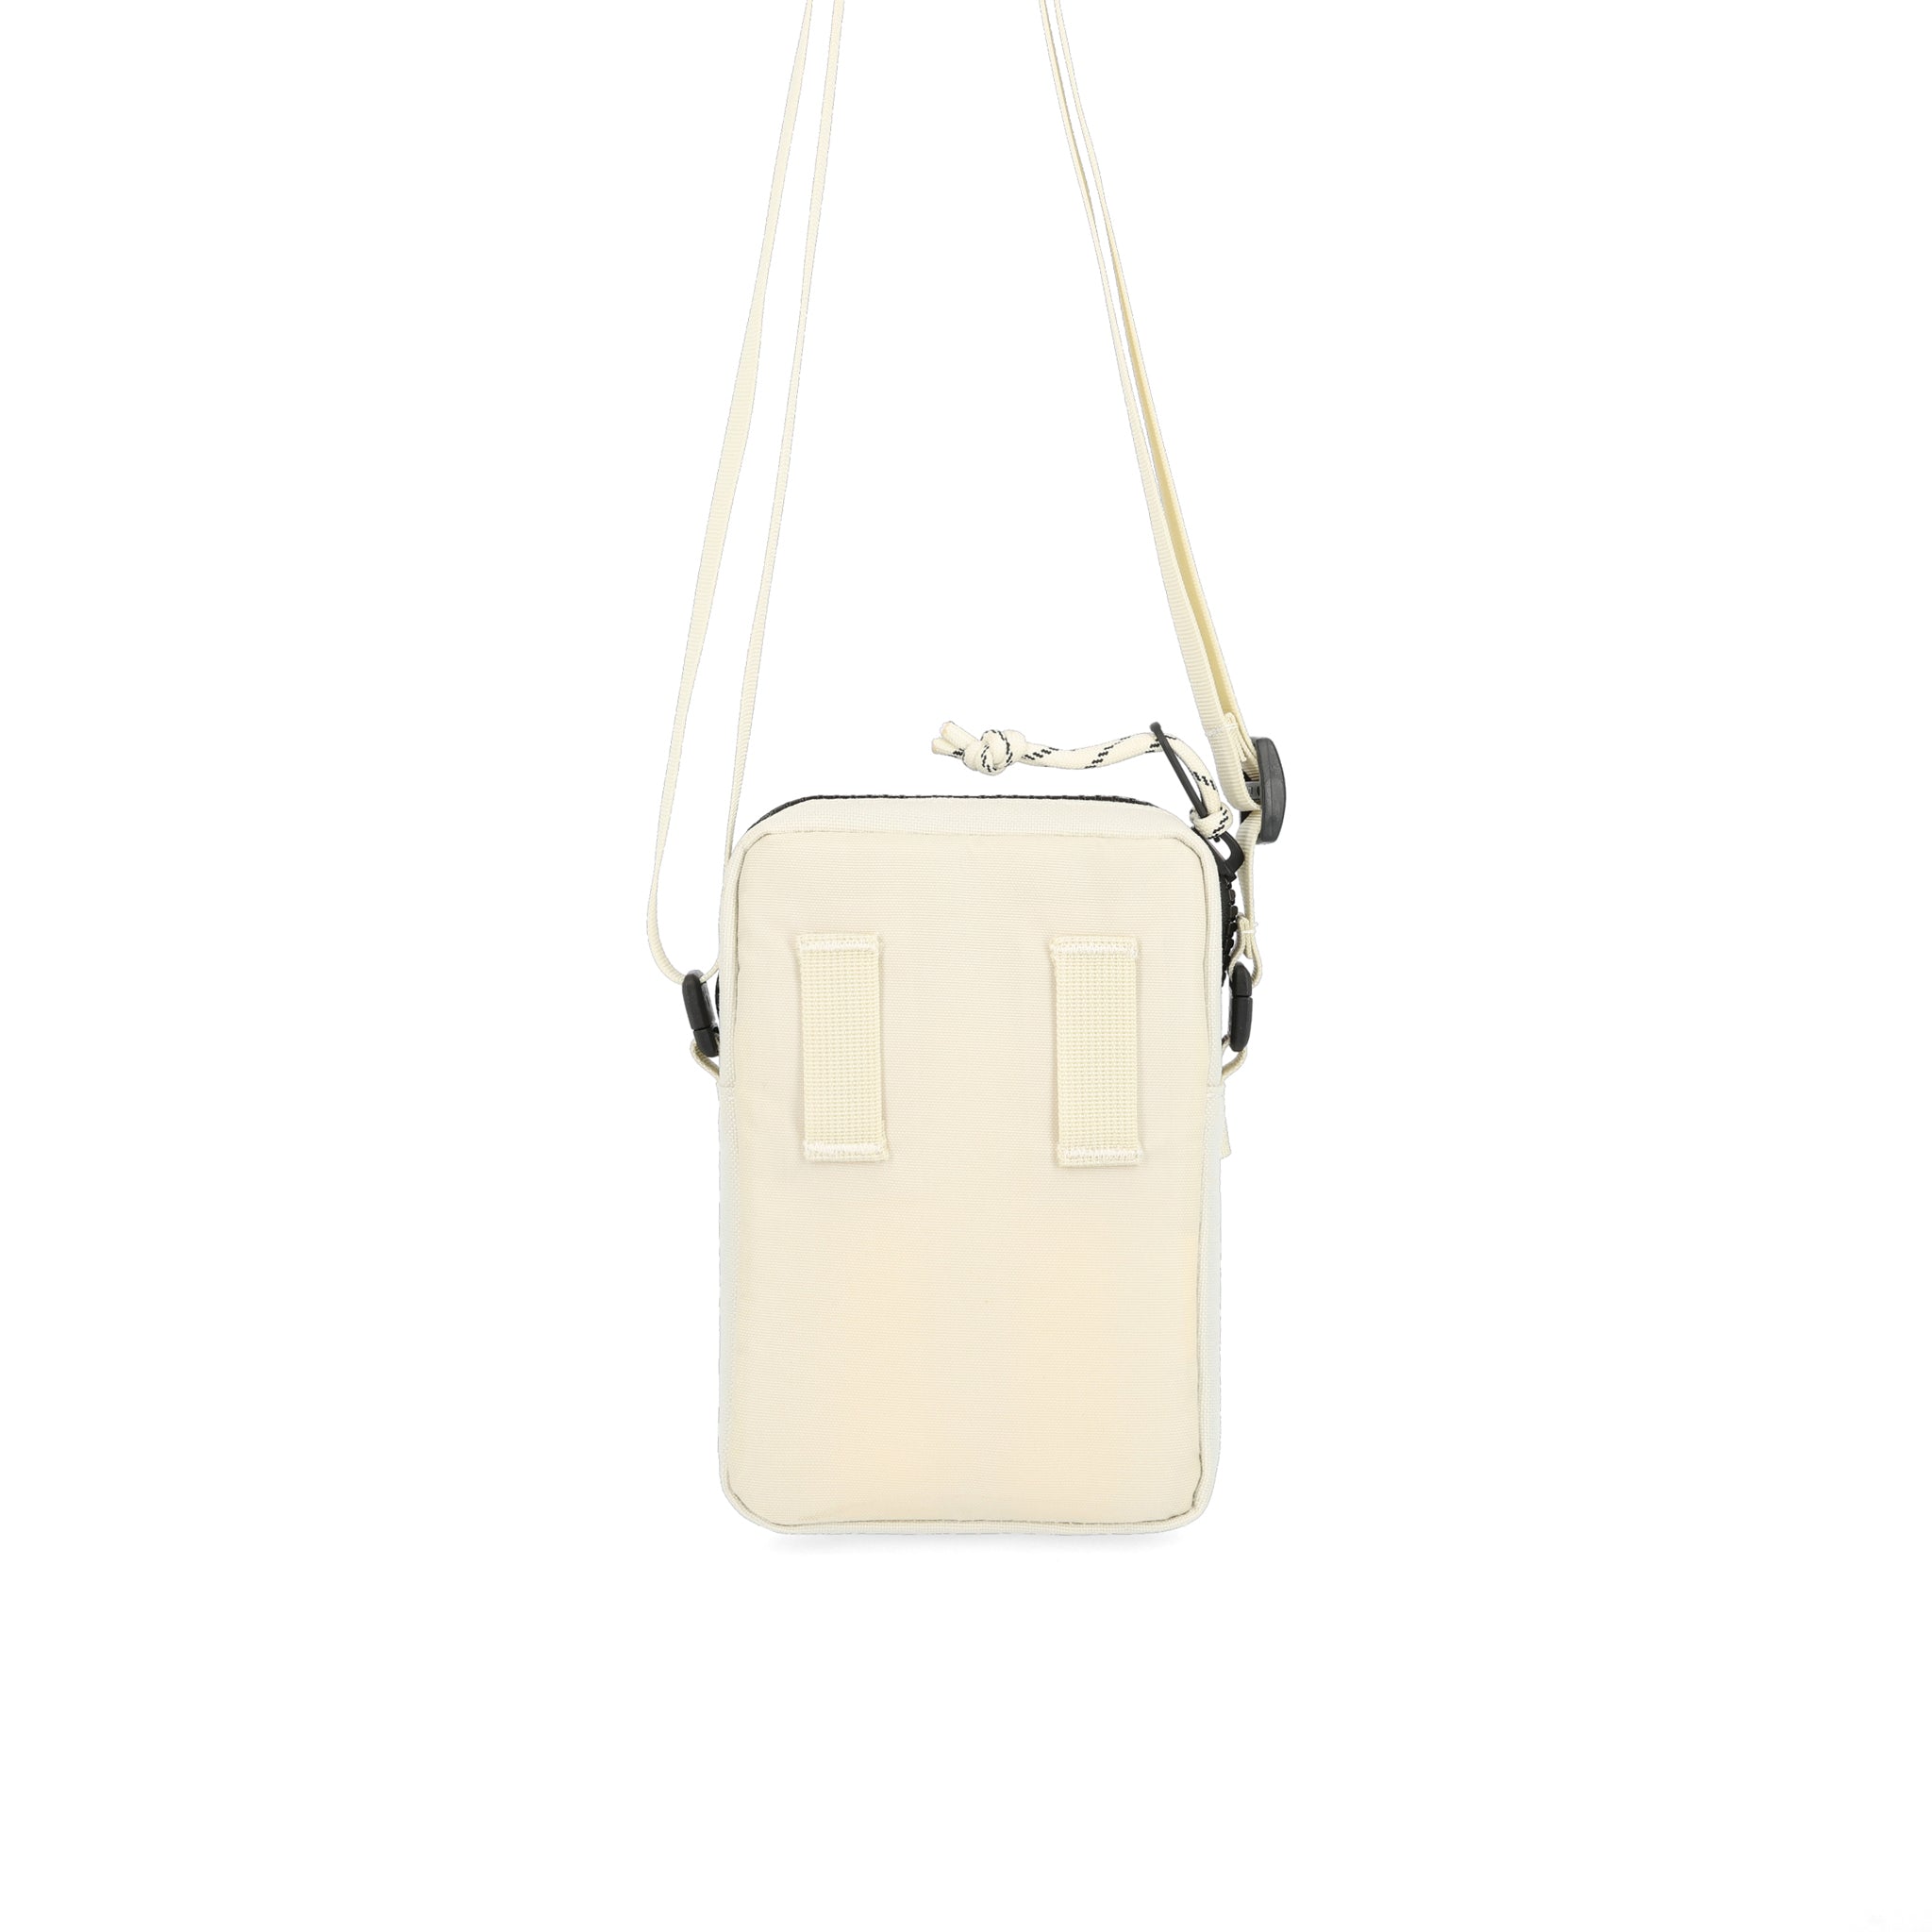 Topo Designs Mini Shoulder Bag - Bone White